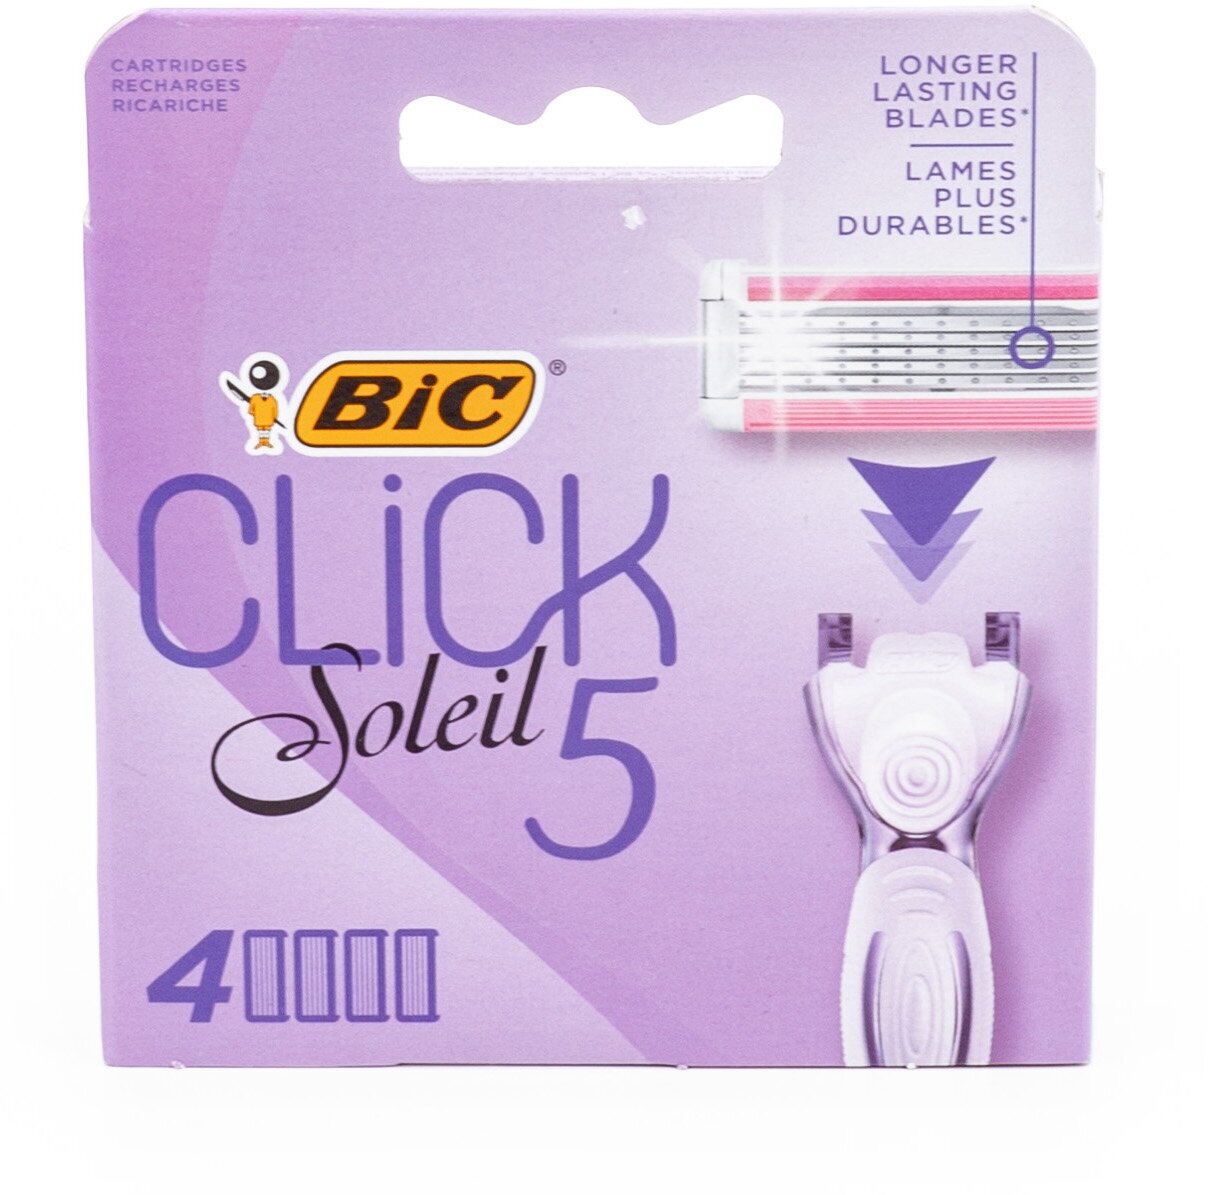 Кассеты для бритья Bic Click 5 Soleil 4шт - фото №11